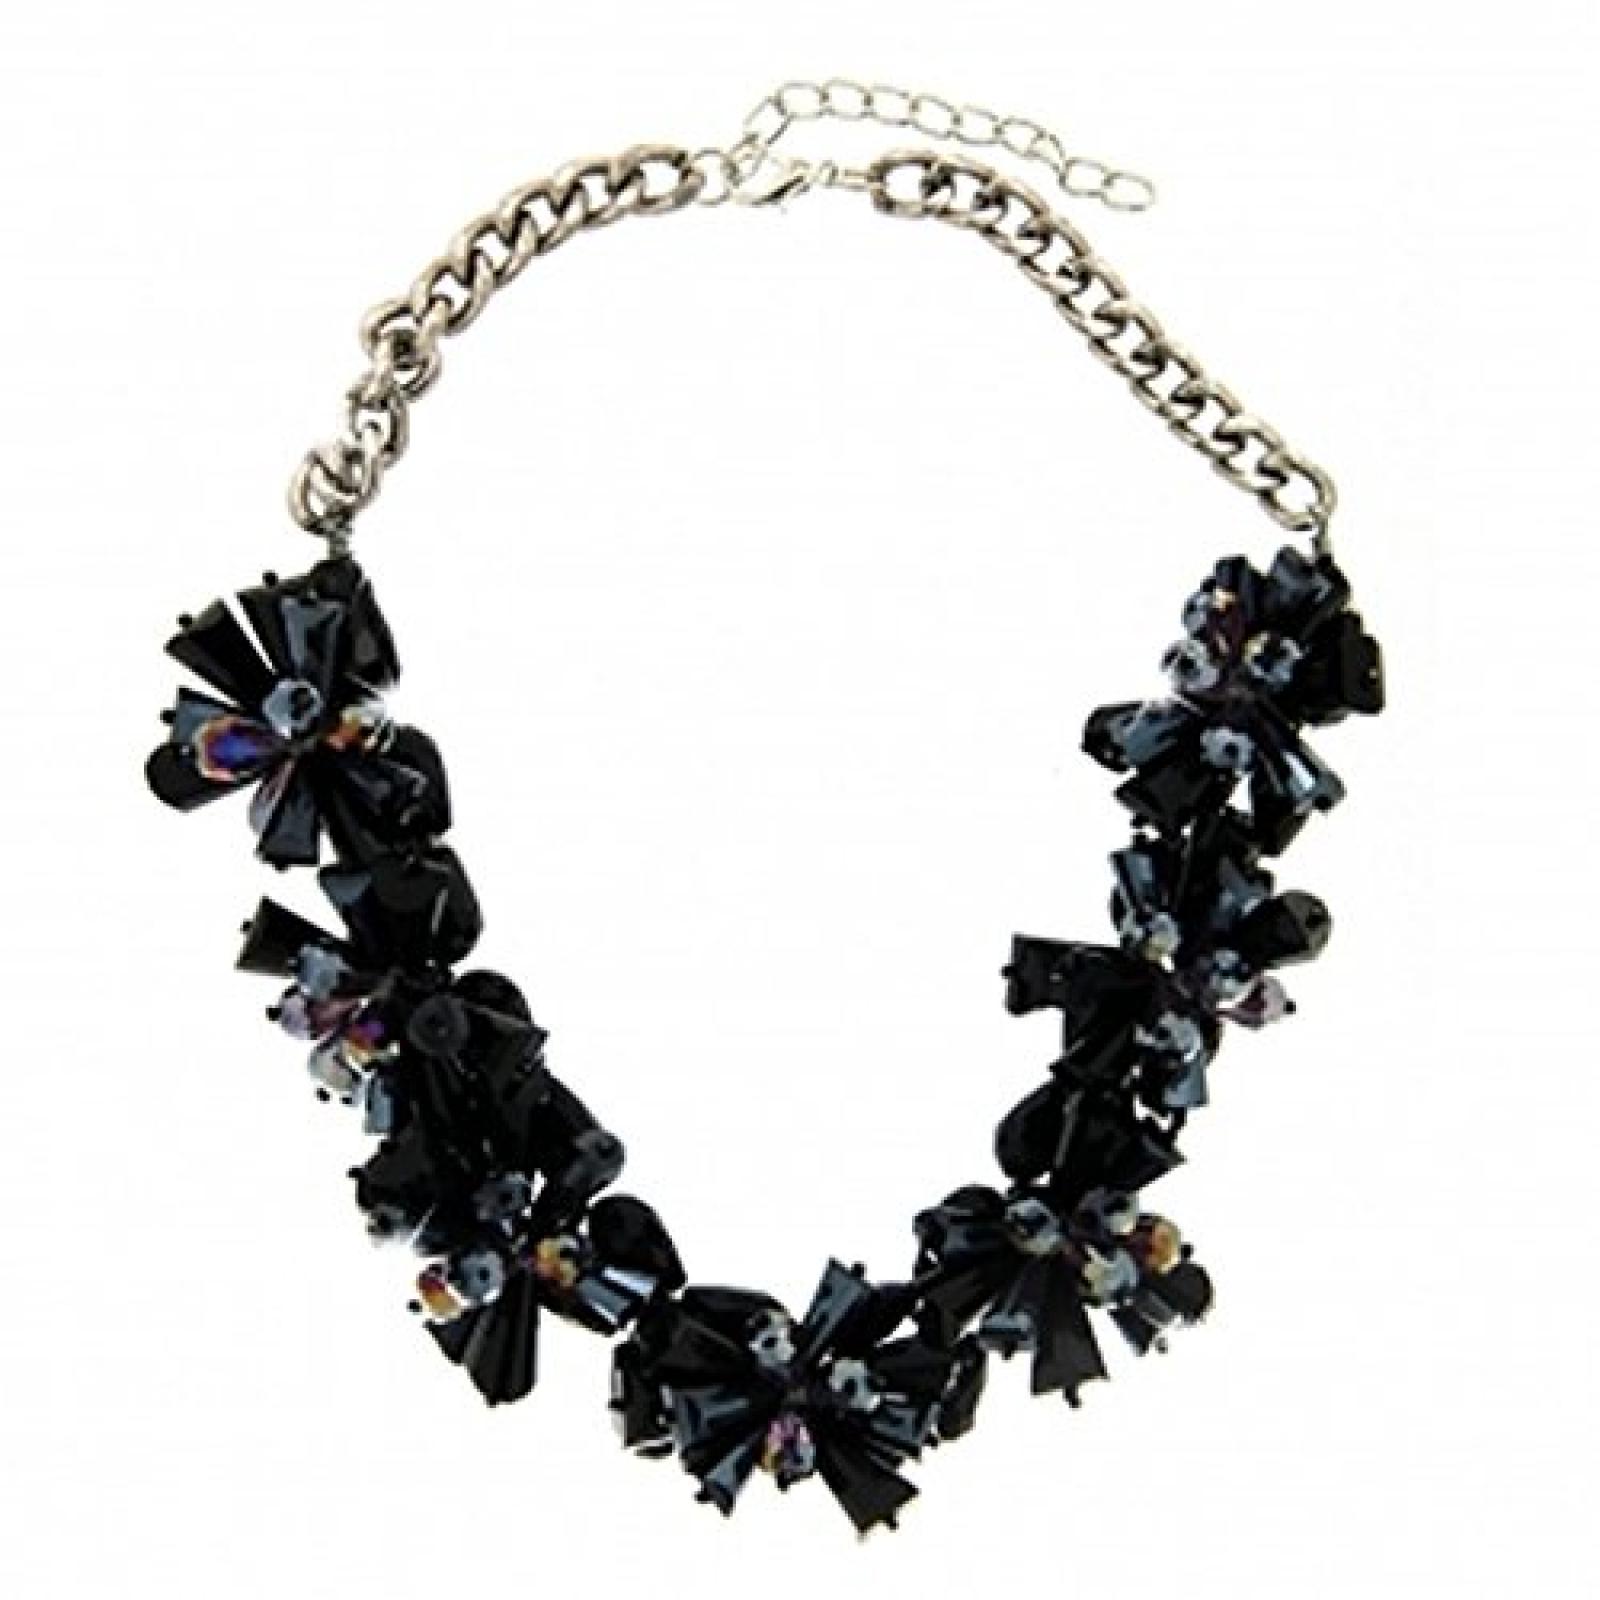 Sweet Deluxe Statement Halskette SOLEY stylish silber mit schwarz schillernden Blüten besetzt 